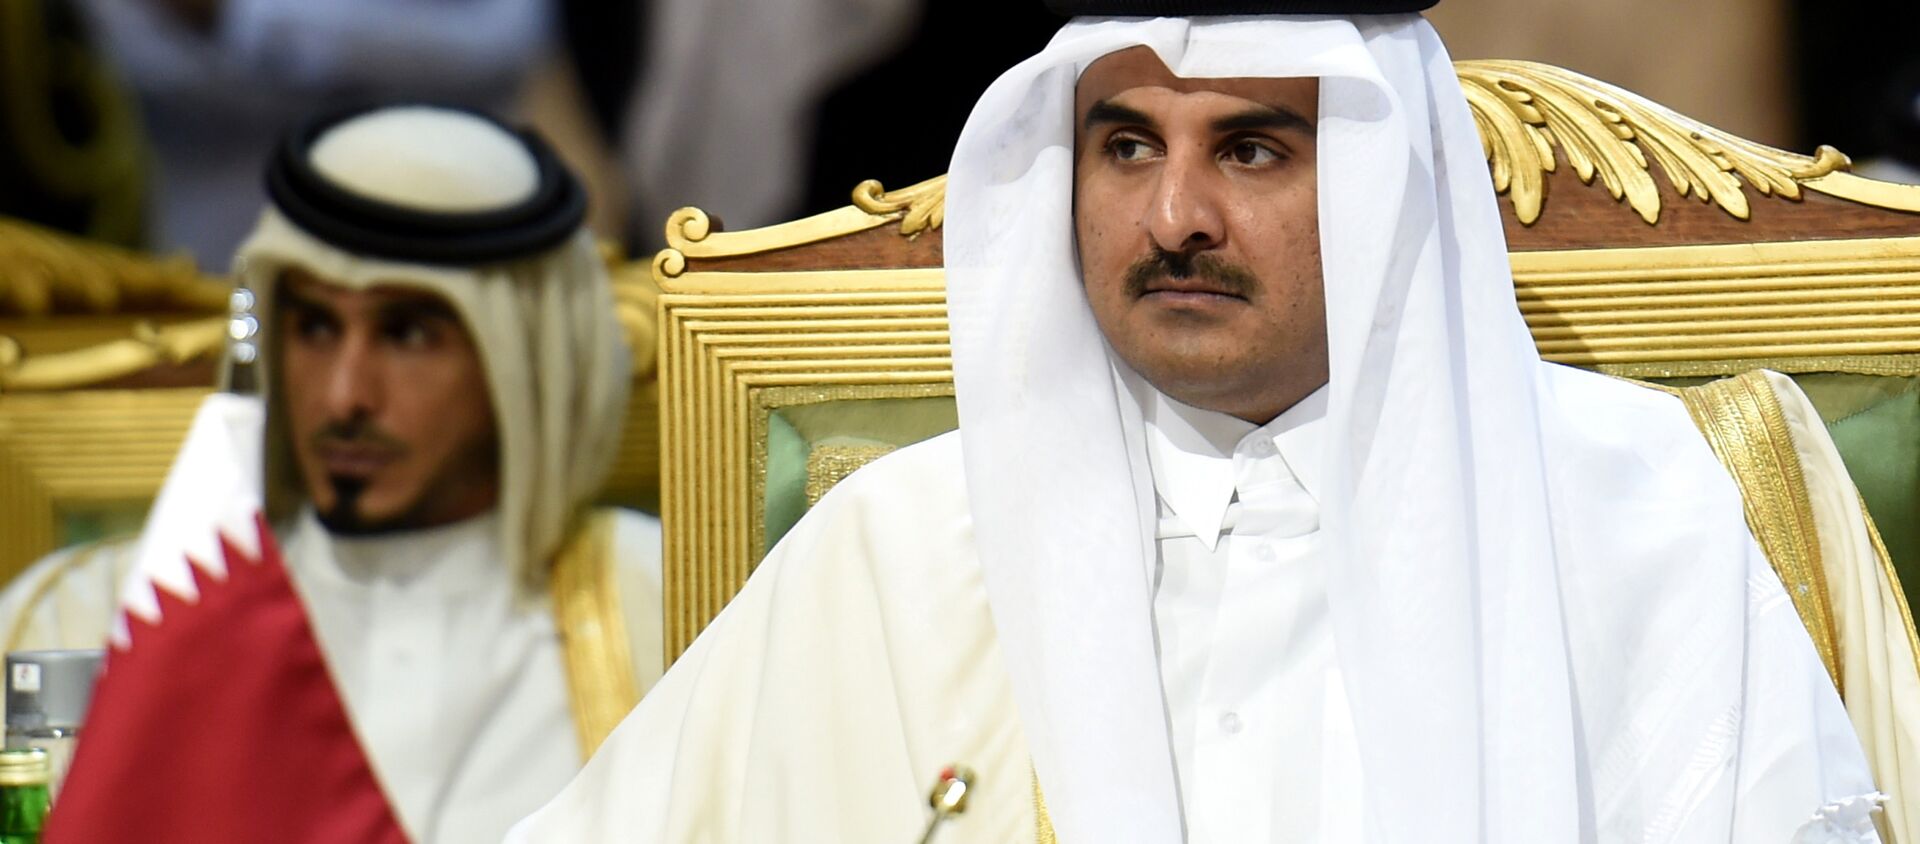 L'émir du Qatar, cheikh Tamim bin Hamad Al-Thani, assiste à la deuxième journée du 136e sommet du Conseil de coopération du Golfe (CCG) qui se tient à Riyad, le 10 décembre 2015, alors que les rois et émirs de six pays du Golfe ont entamé deux jours de discussions, au moment où des discussions sans précédent sont menées par l'opposition syrienne dans un hôtel de luxe dans une autre partie de la ville. Le roi saoudien Salman bin Abdulaziz a appelé à des solutions politiques aux guerres en Syrie et au Yémen, tout en condamnant le terrorisme, à l'ouverture du sommet annuel du Golfe. PHOTO AFP / FAYEZ NURELDINE  - Sputnik Afrique, 1920, 27.05.2021